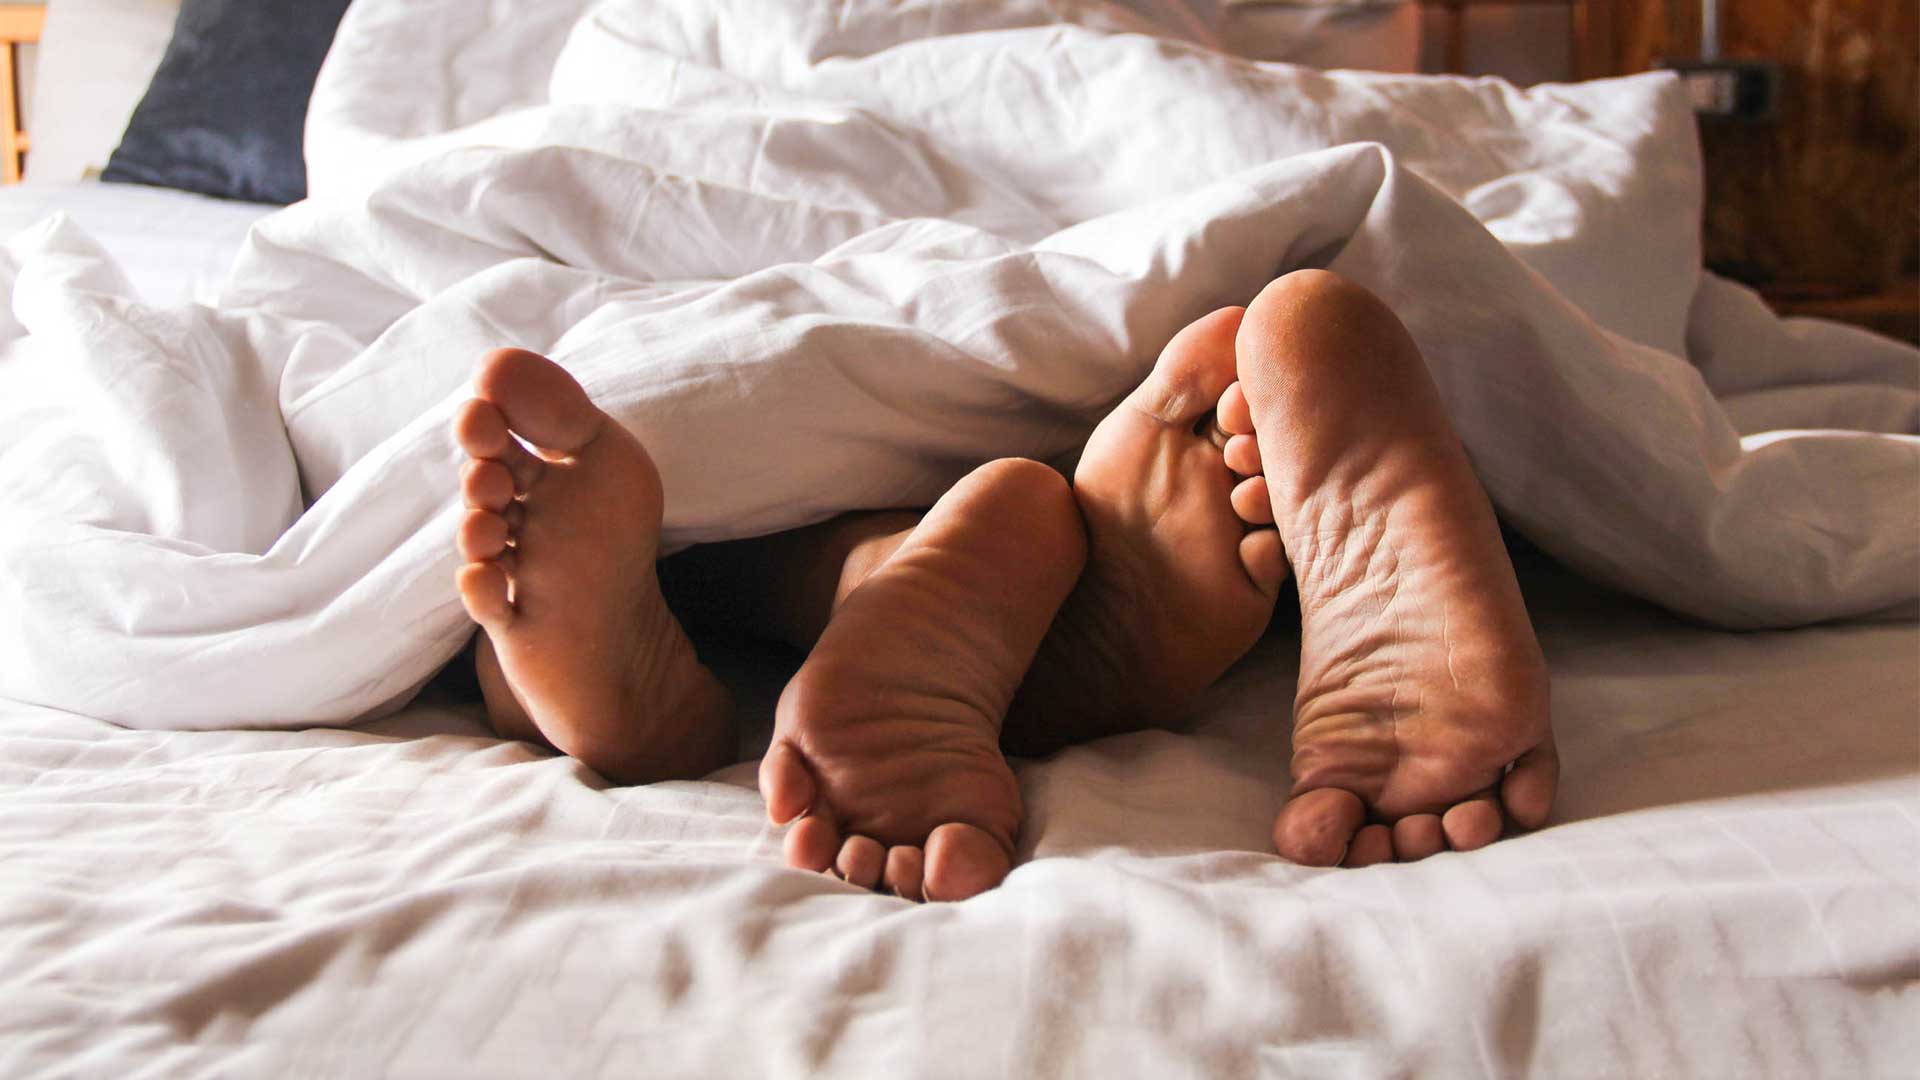 Füße im Bett, Menschen die Sex haben